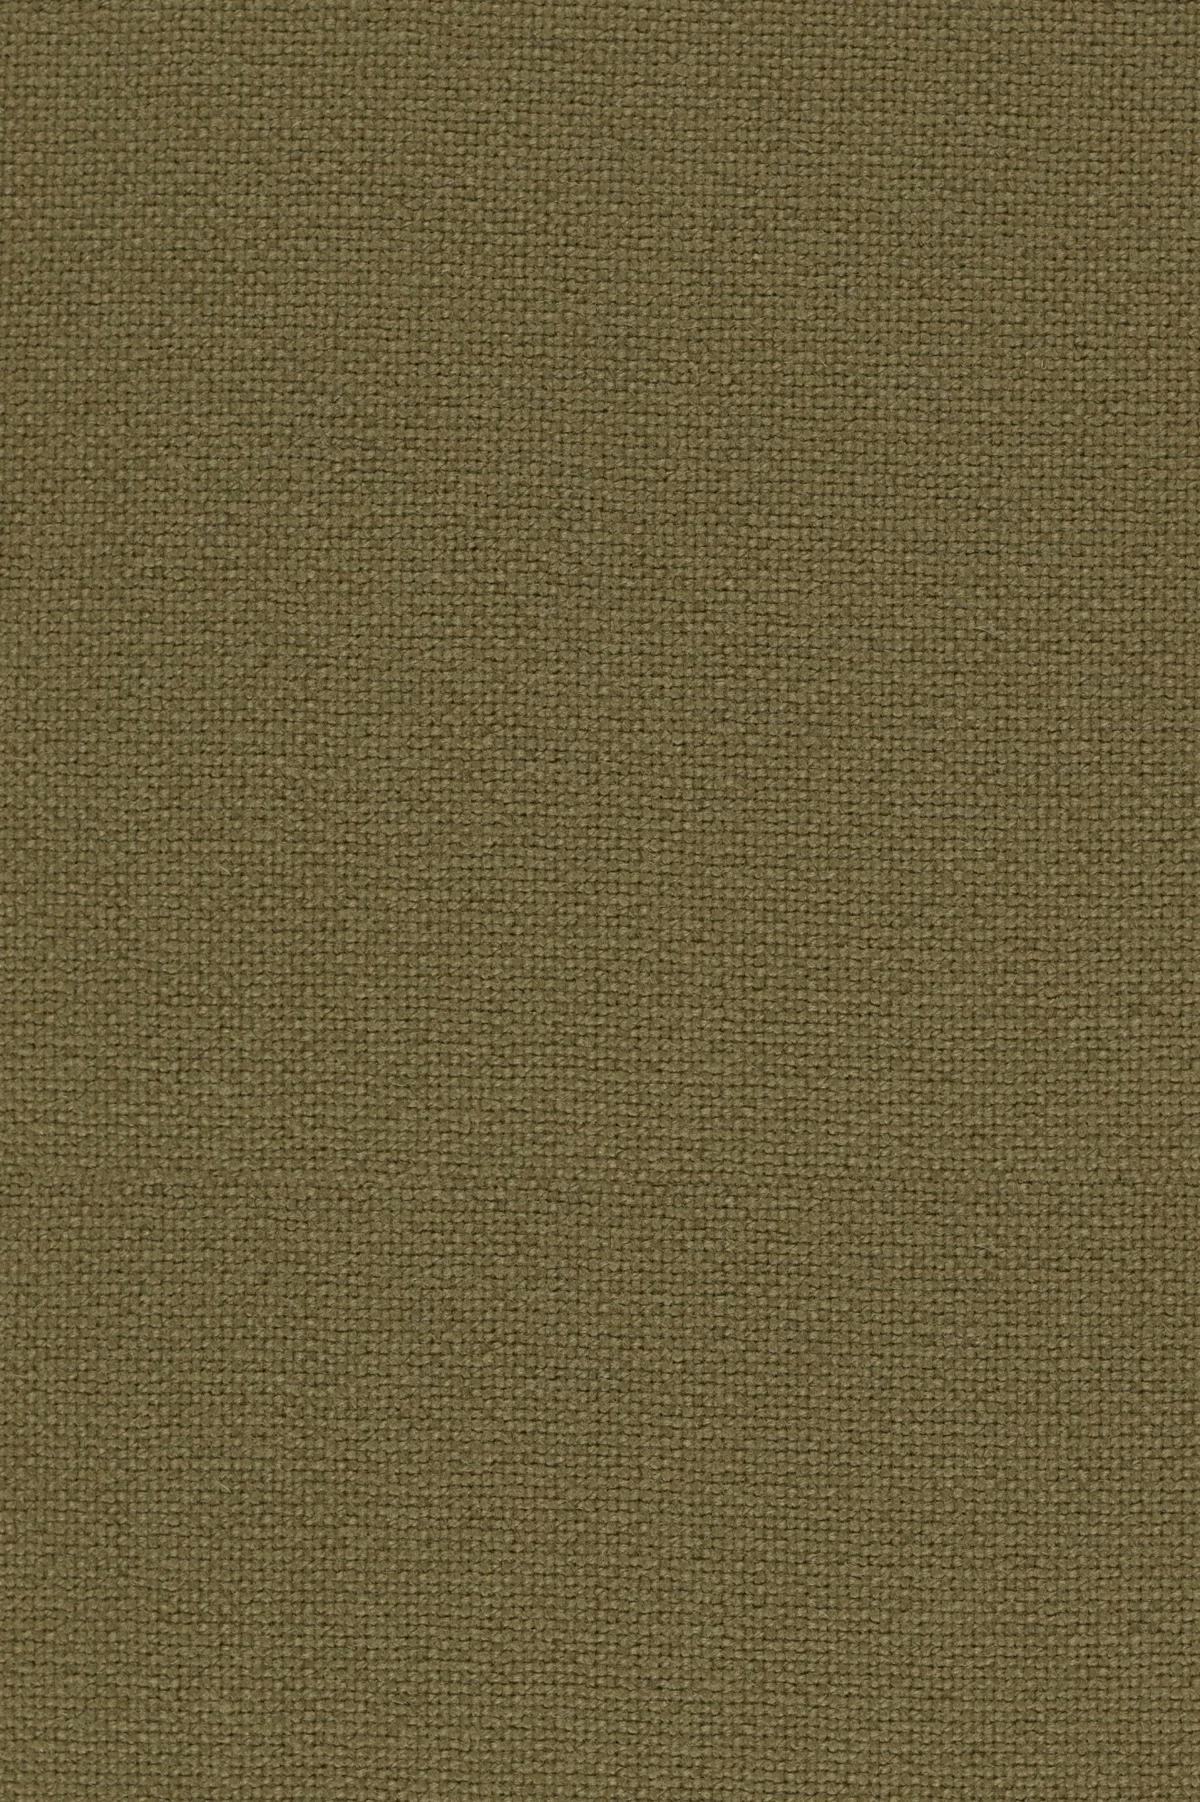 Fabric sample Hallingdal 65 224 brown